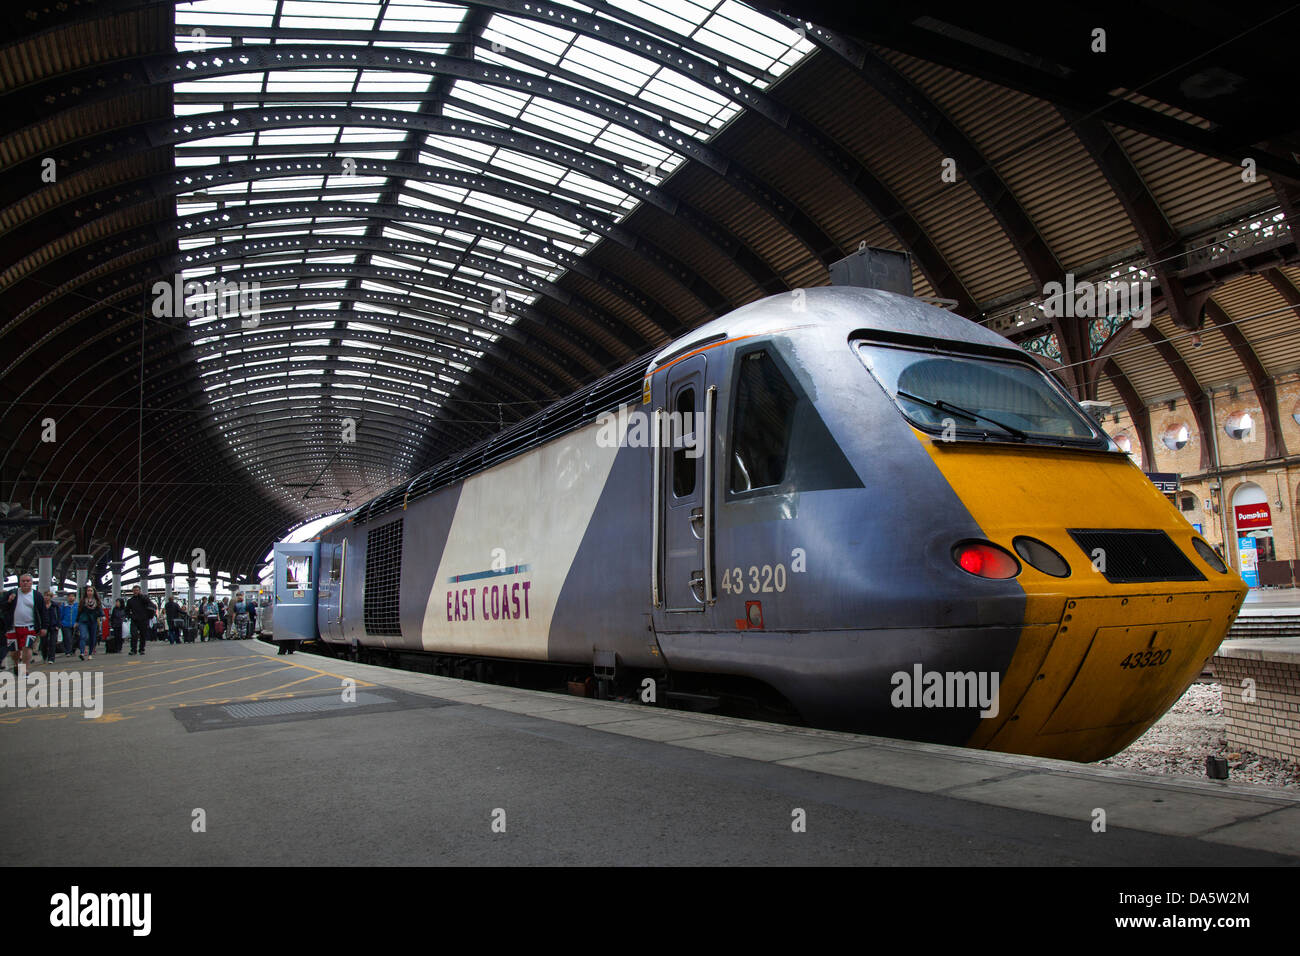 Costa est 43320 treni locomotiva diesel della linea principale stazione ferroviaria della città di York, nello Yorkshire, Inghilterra, Regno Unito Foto Stock